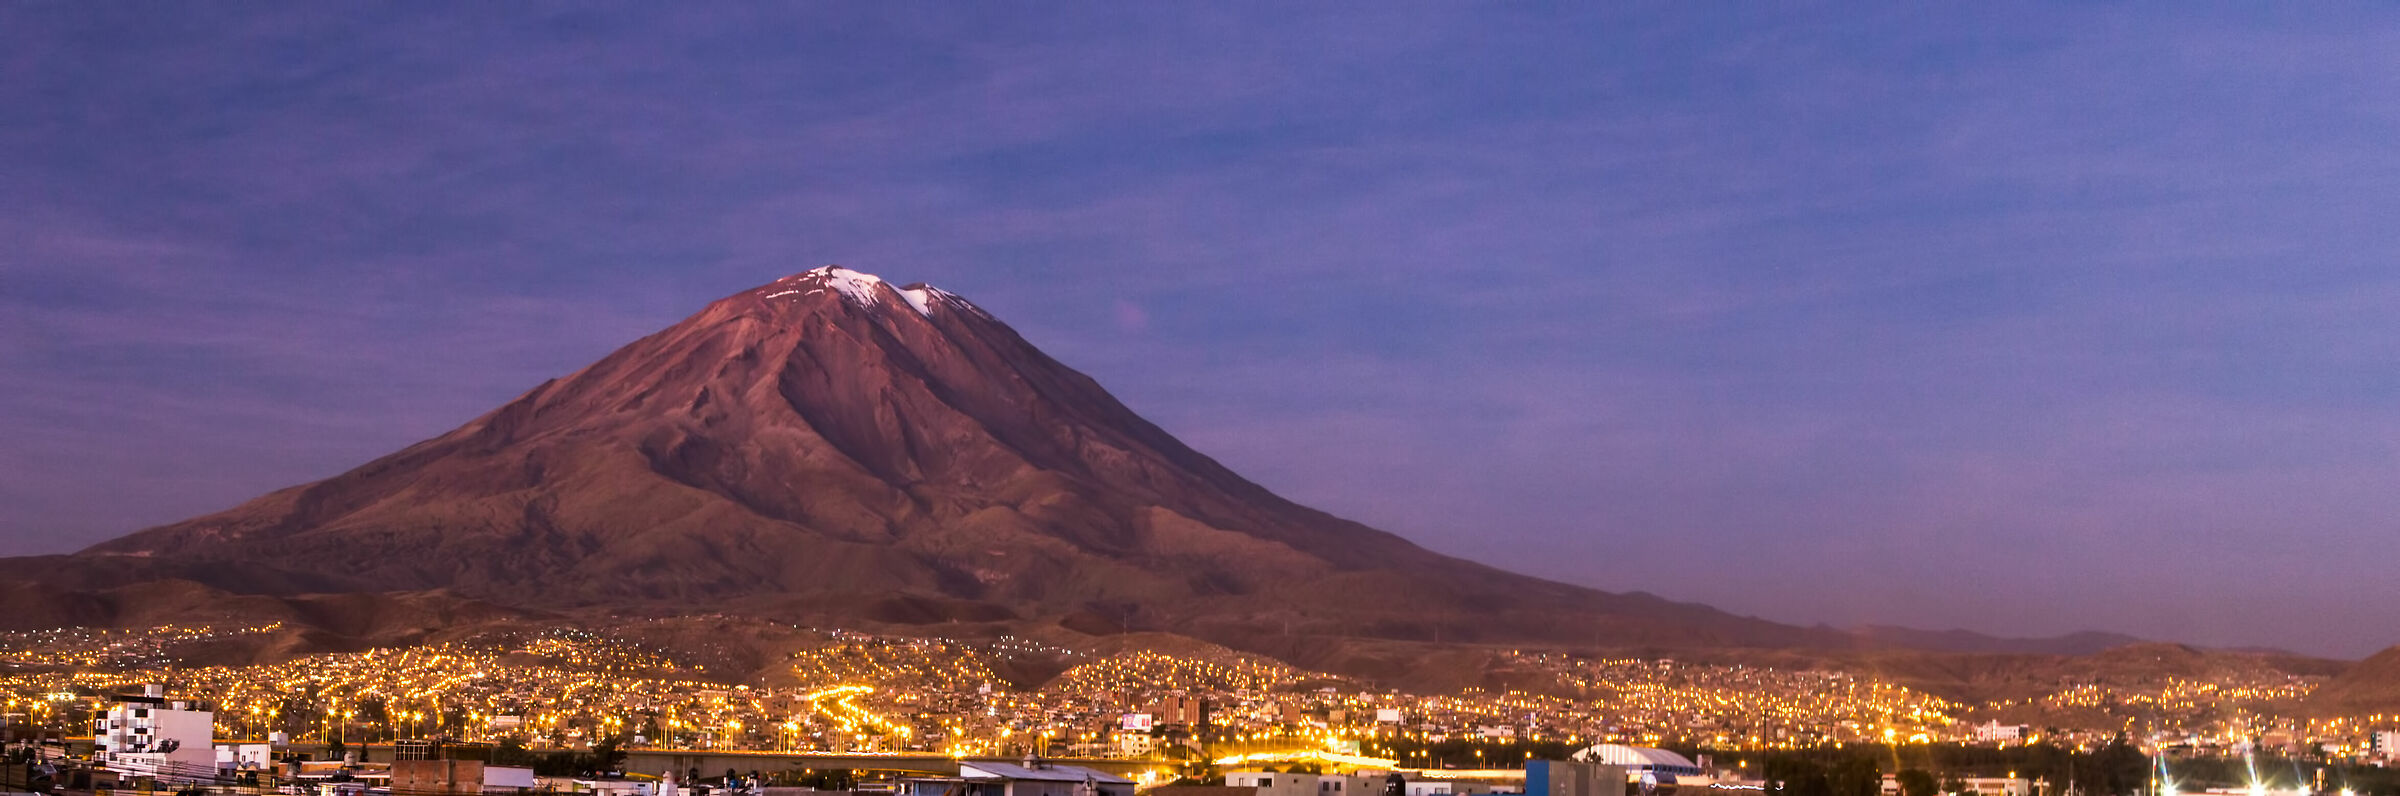 Vulcano El Mismi con Arequipa by night...